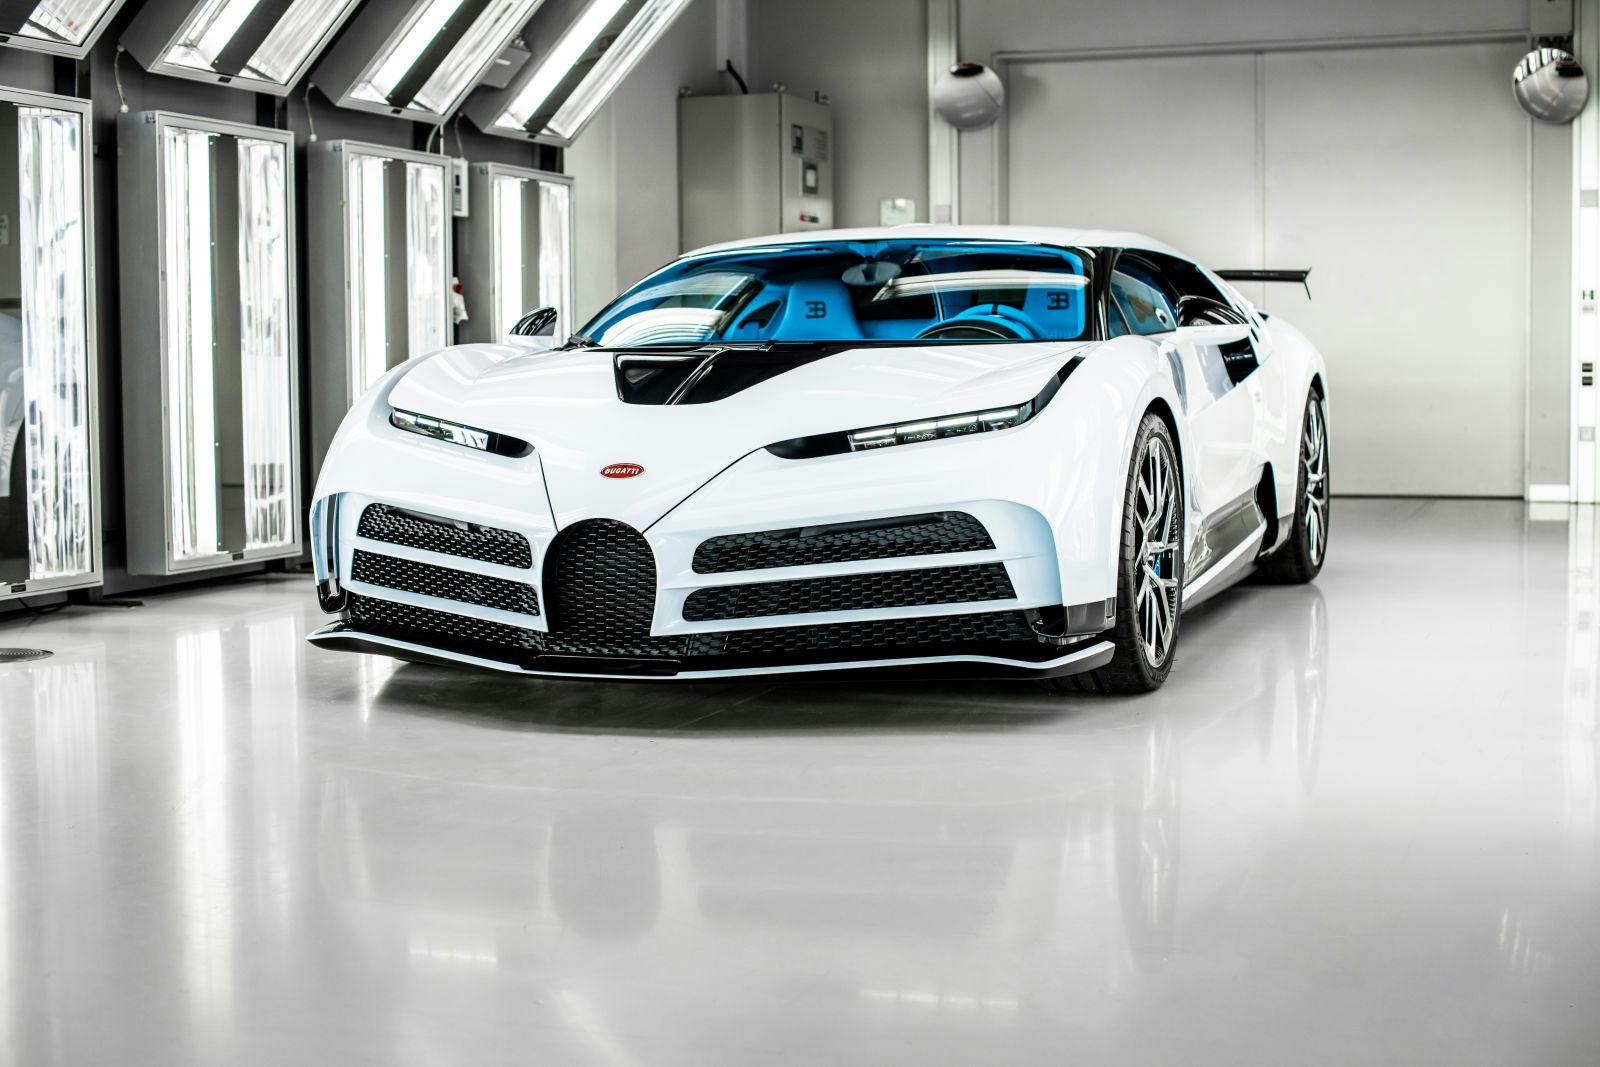 La livraison de la dernière Centodieci marque la fin de l’ère moderne du coachbuilding pour Bugatti.